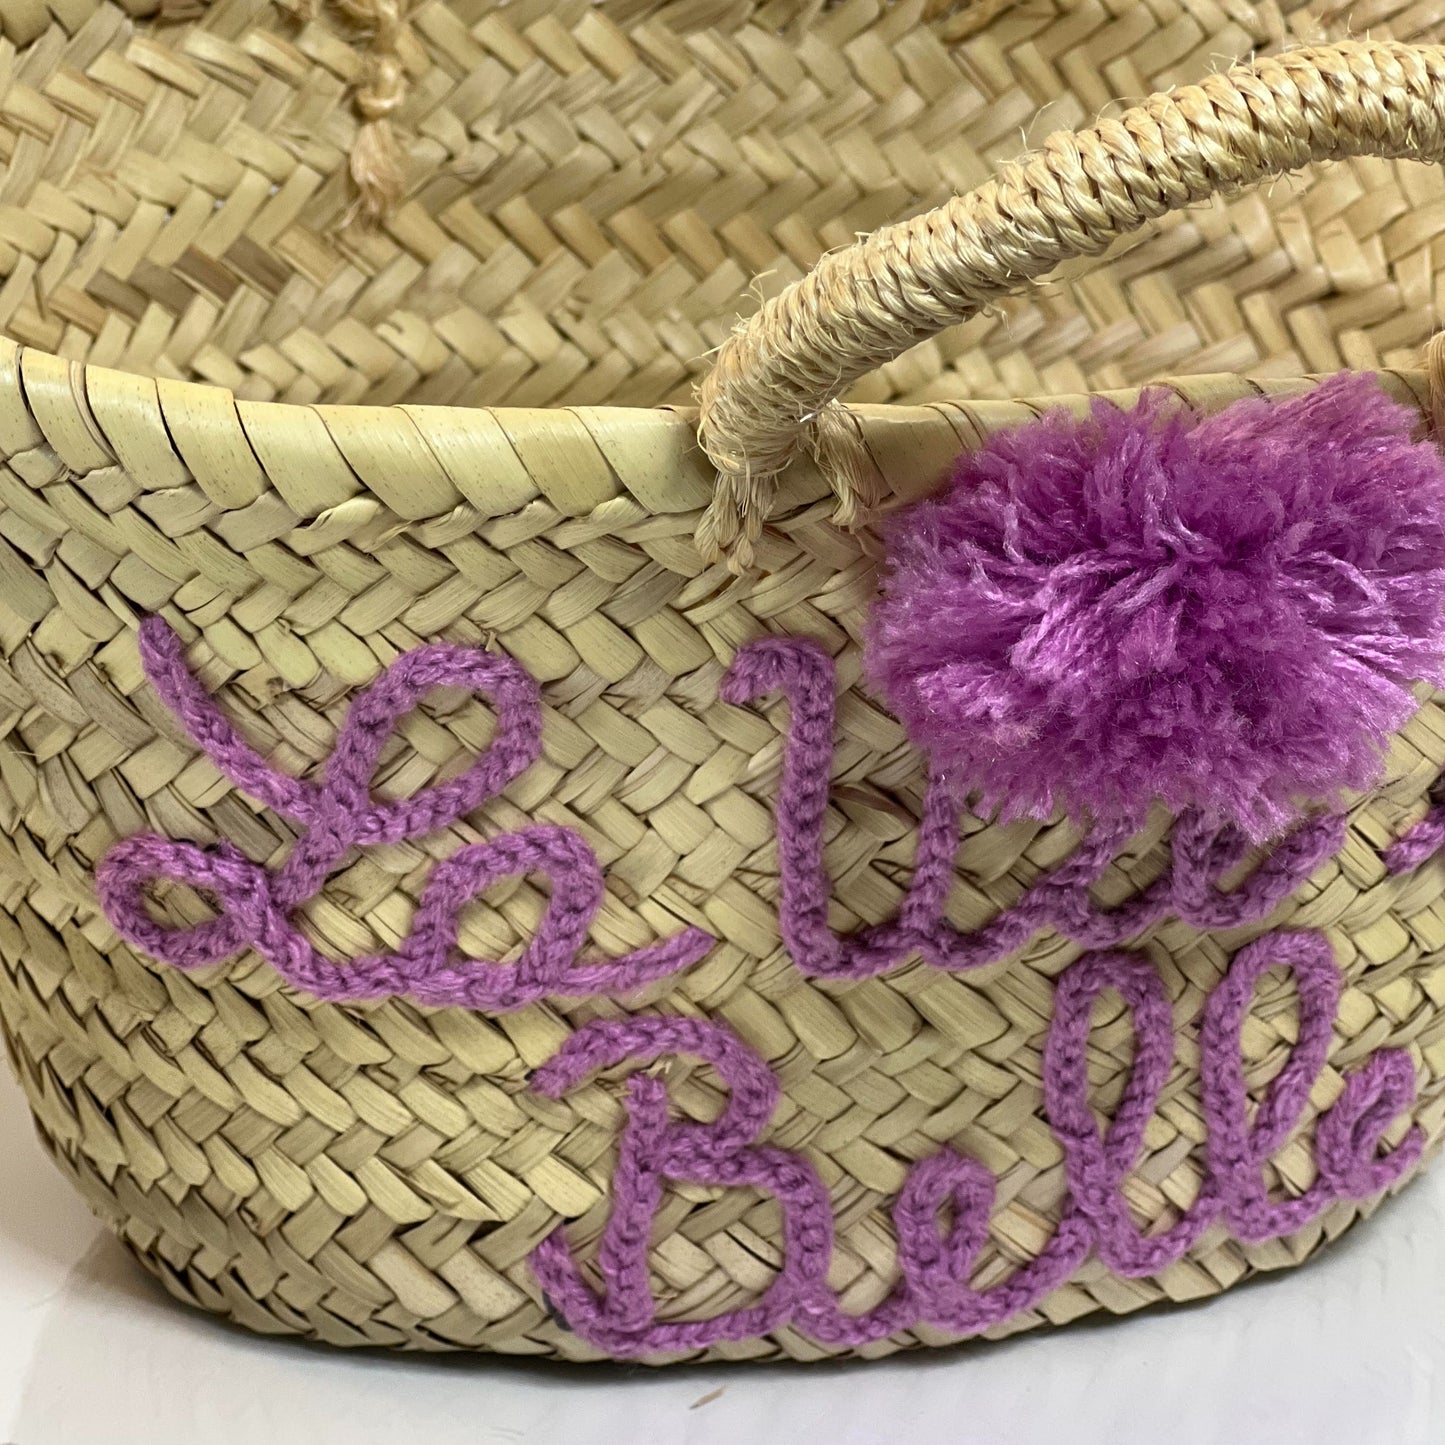 MINI BEACH BASKET BAG "la vie est belle" - purple